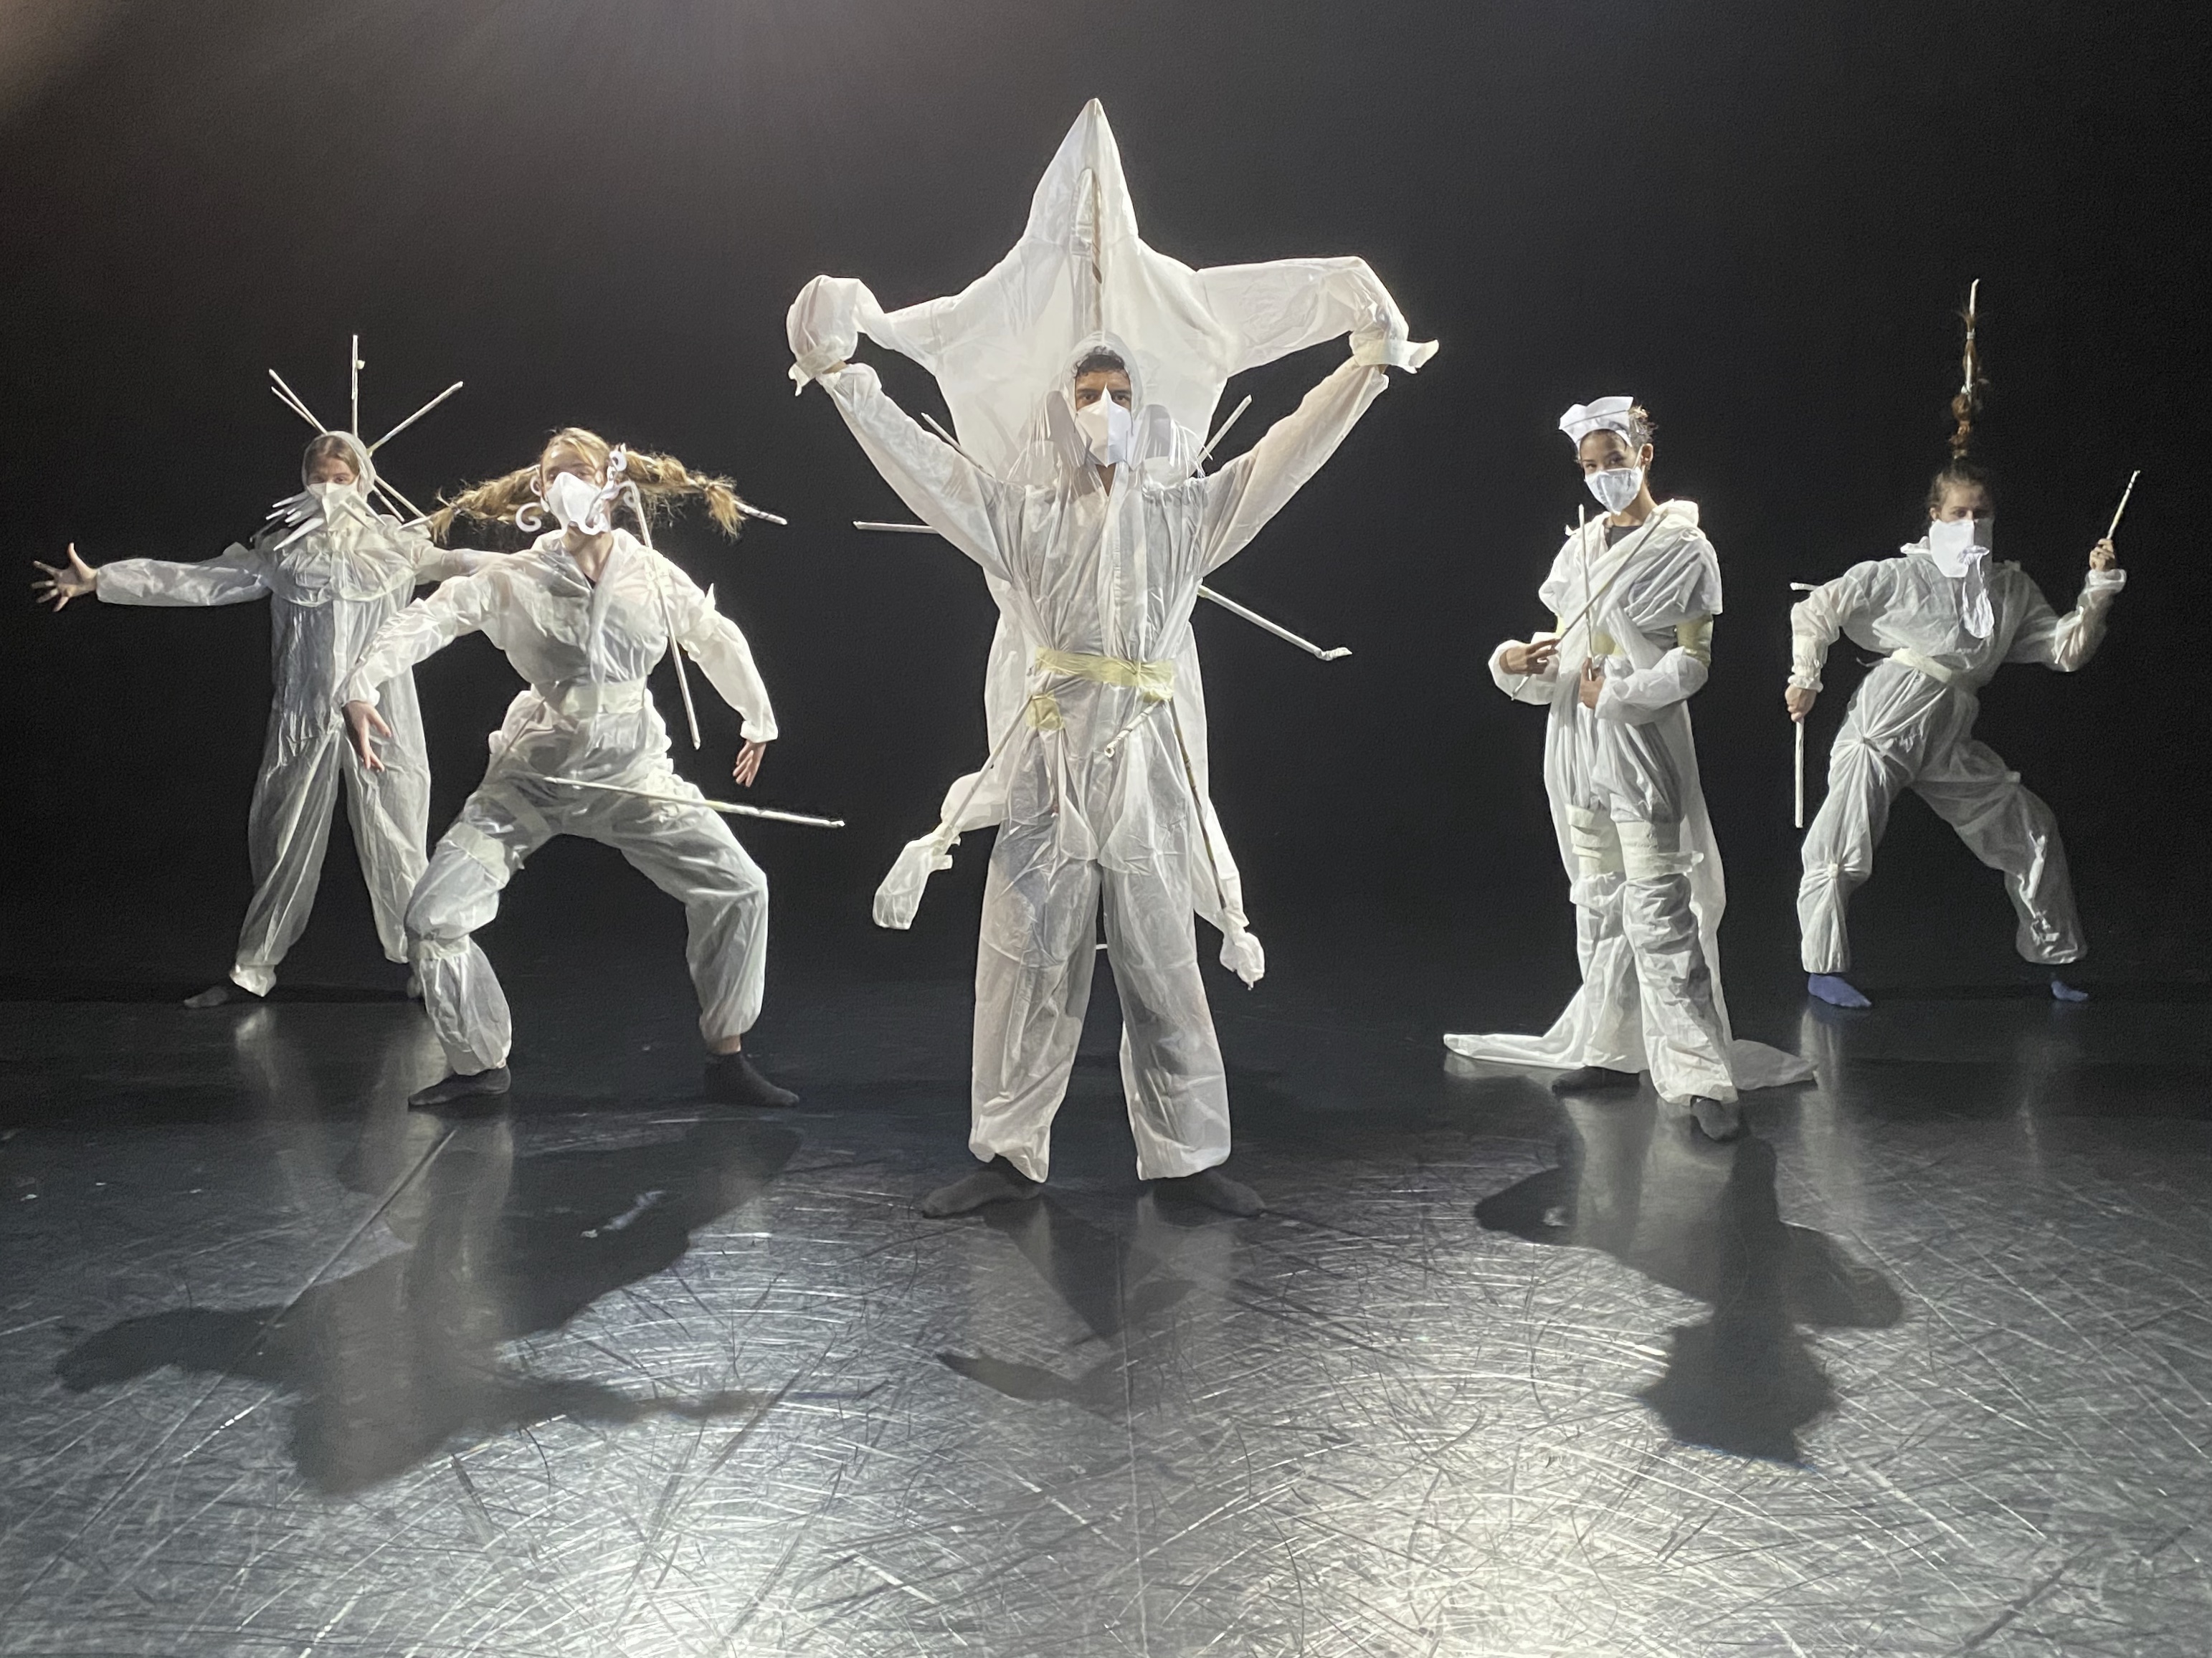 Fünf in weiße Schutzanzüge gekleidete Personen tragen futuristisch wirkende Masken aus Papier und Stäben